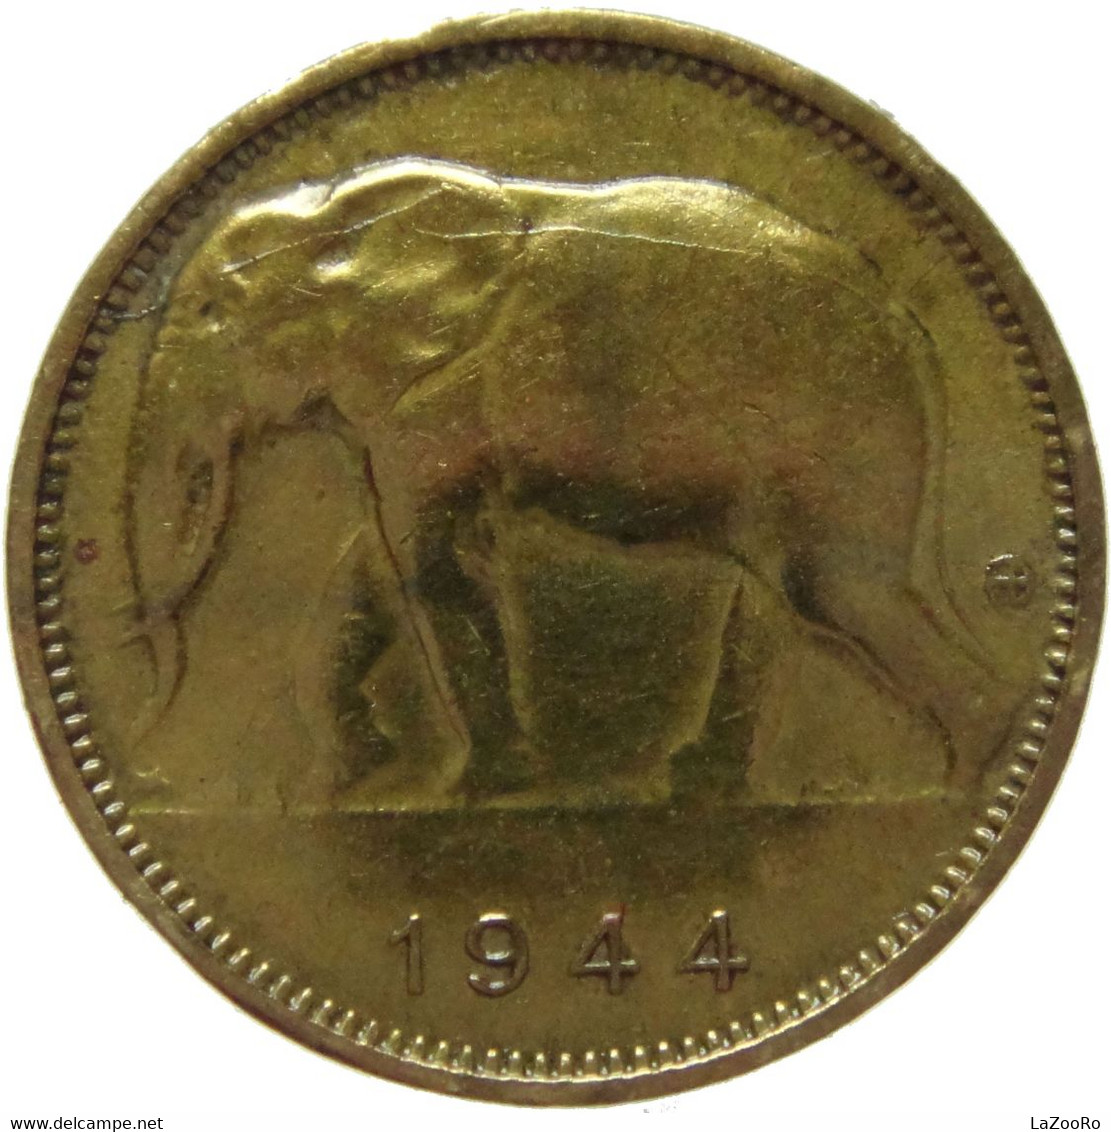 LaZooRo: Belgian Congo 1 Franc 1944 XF - 1934-1945: Leopold III